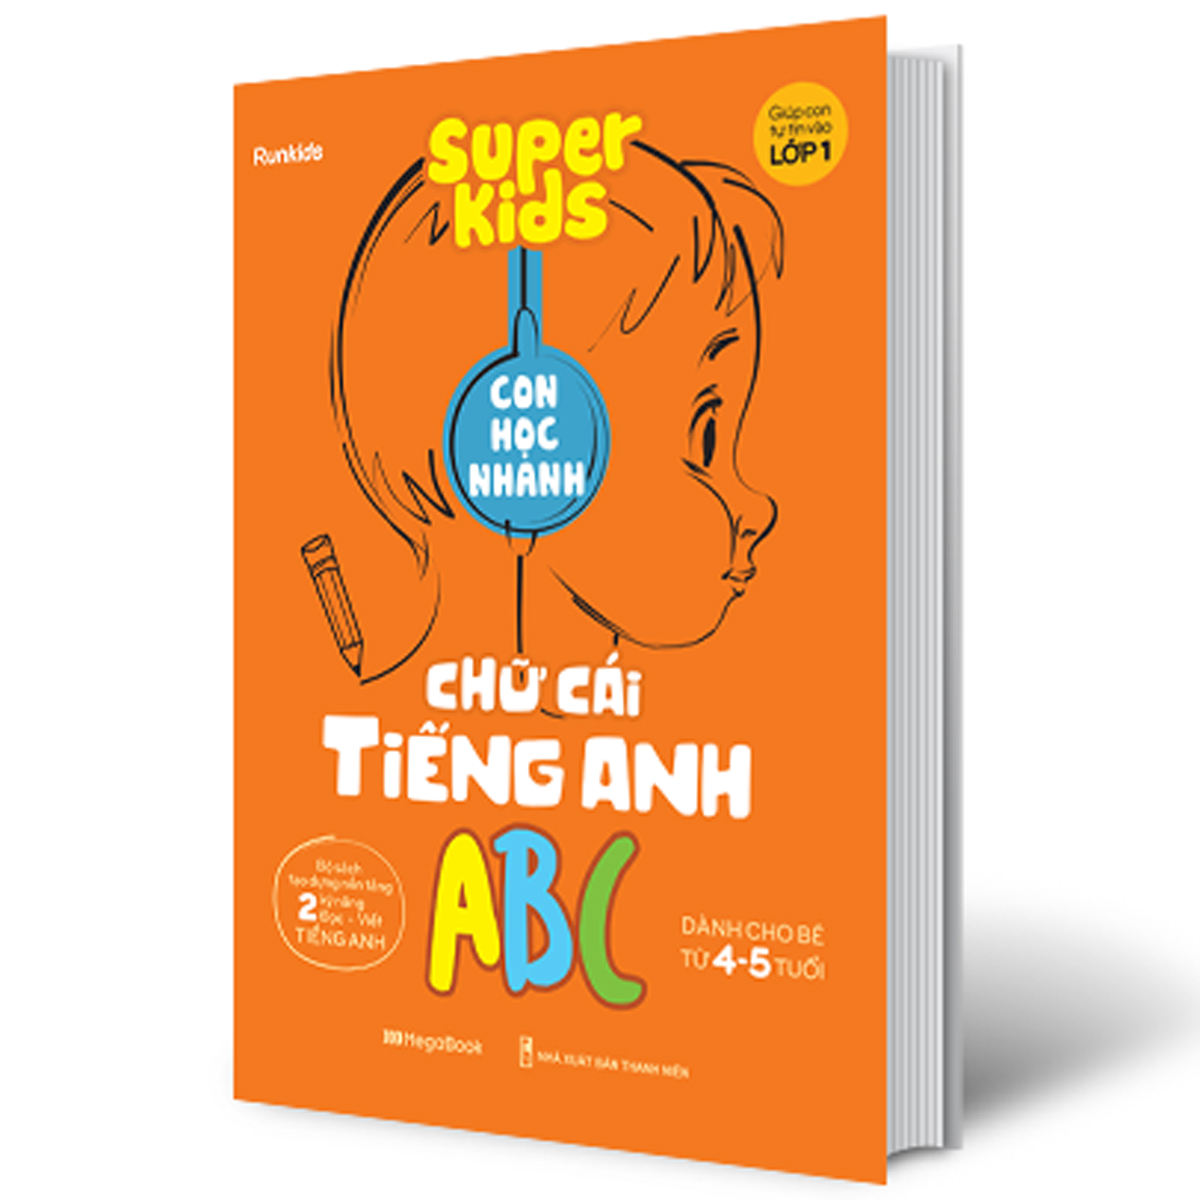 Super Kids Con Học Nhanh Chữ Cái Tiếng Anh ABC